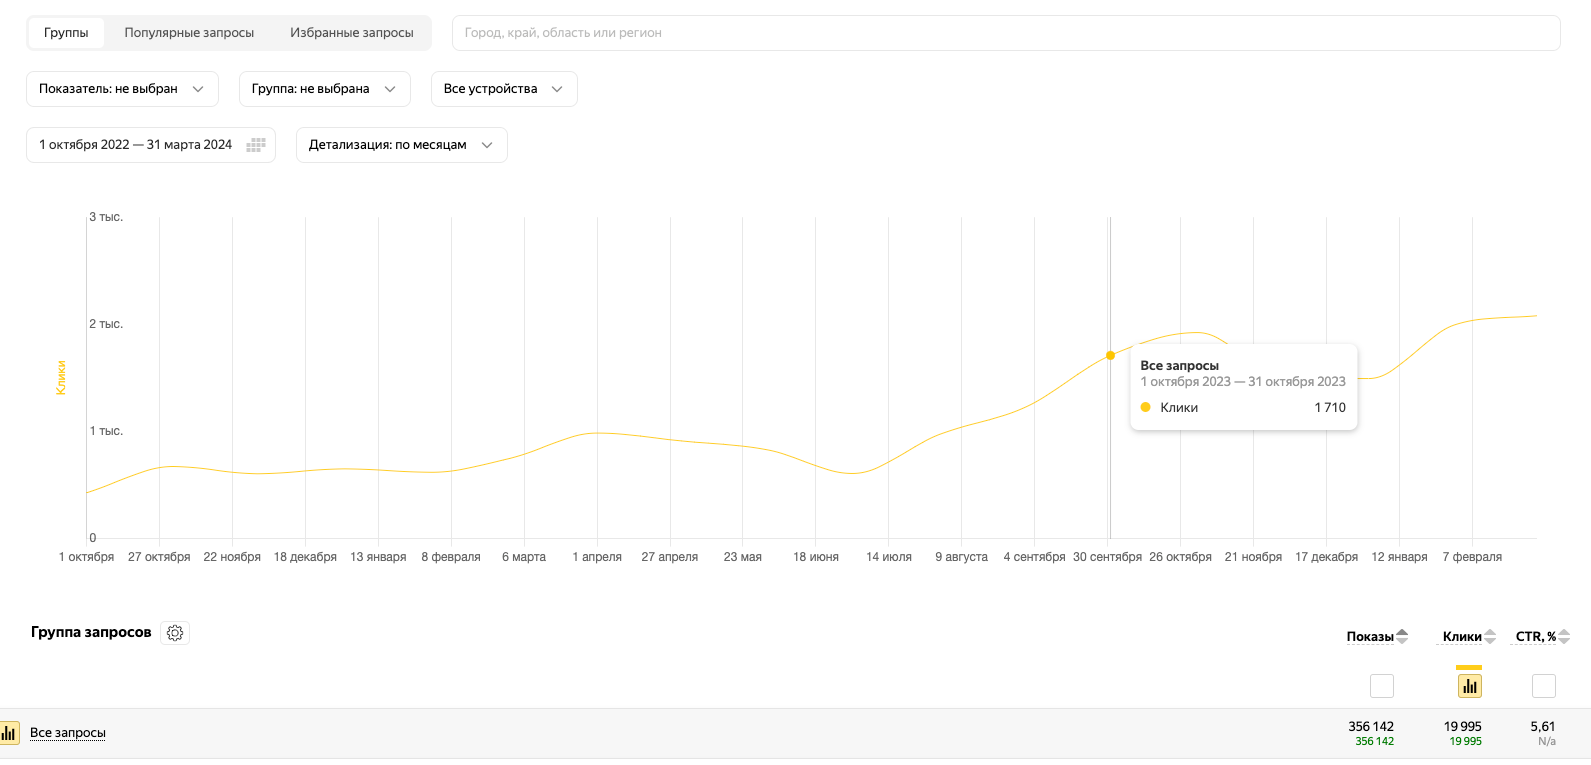 Рис. 2 Год с начала работ и рост на 400% переходов пользователей в месяц, только по яндексу